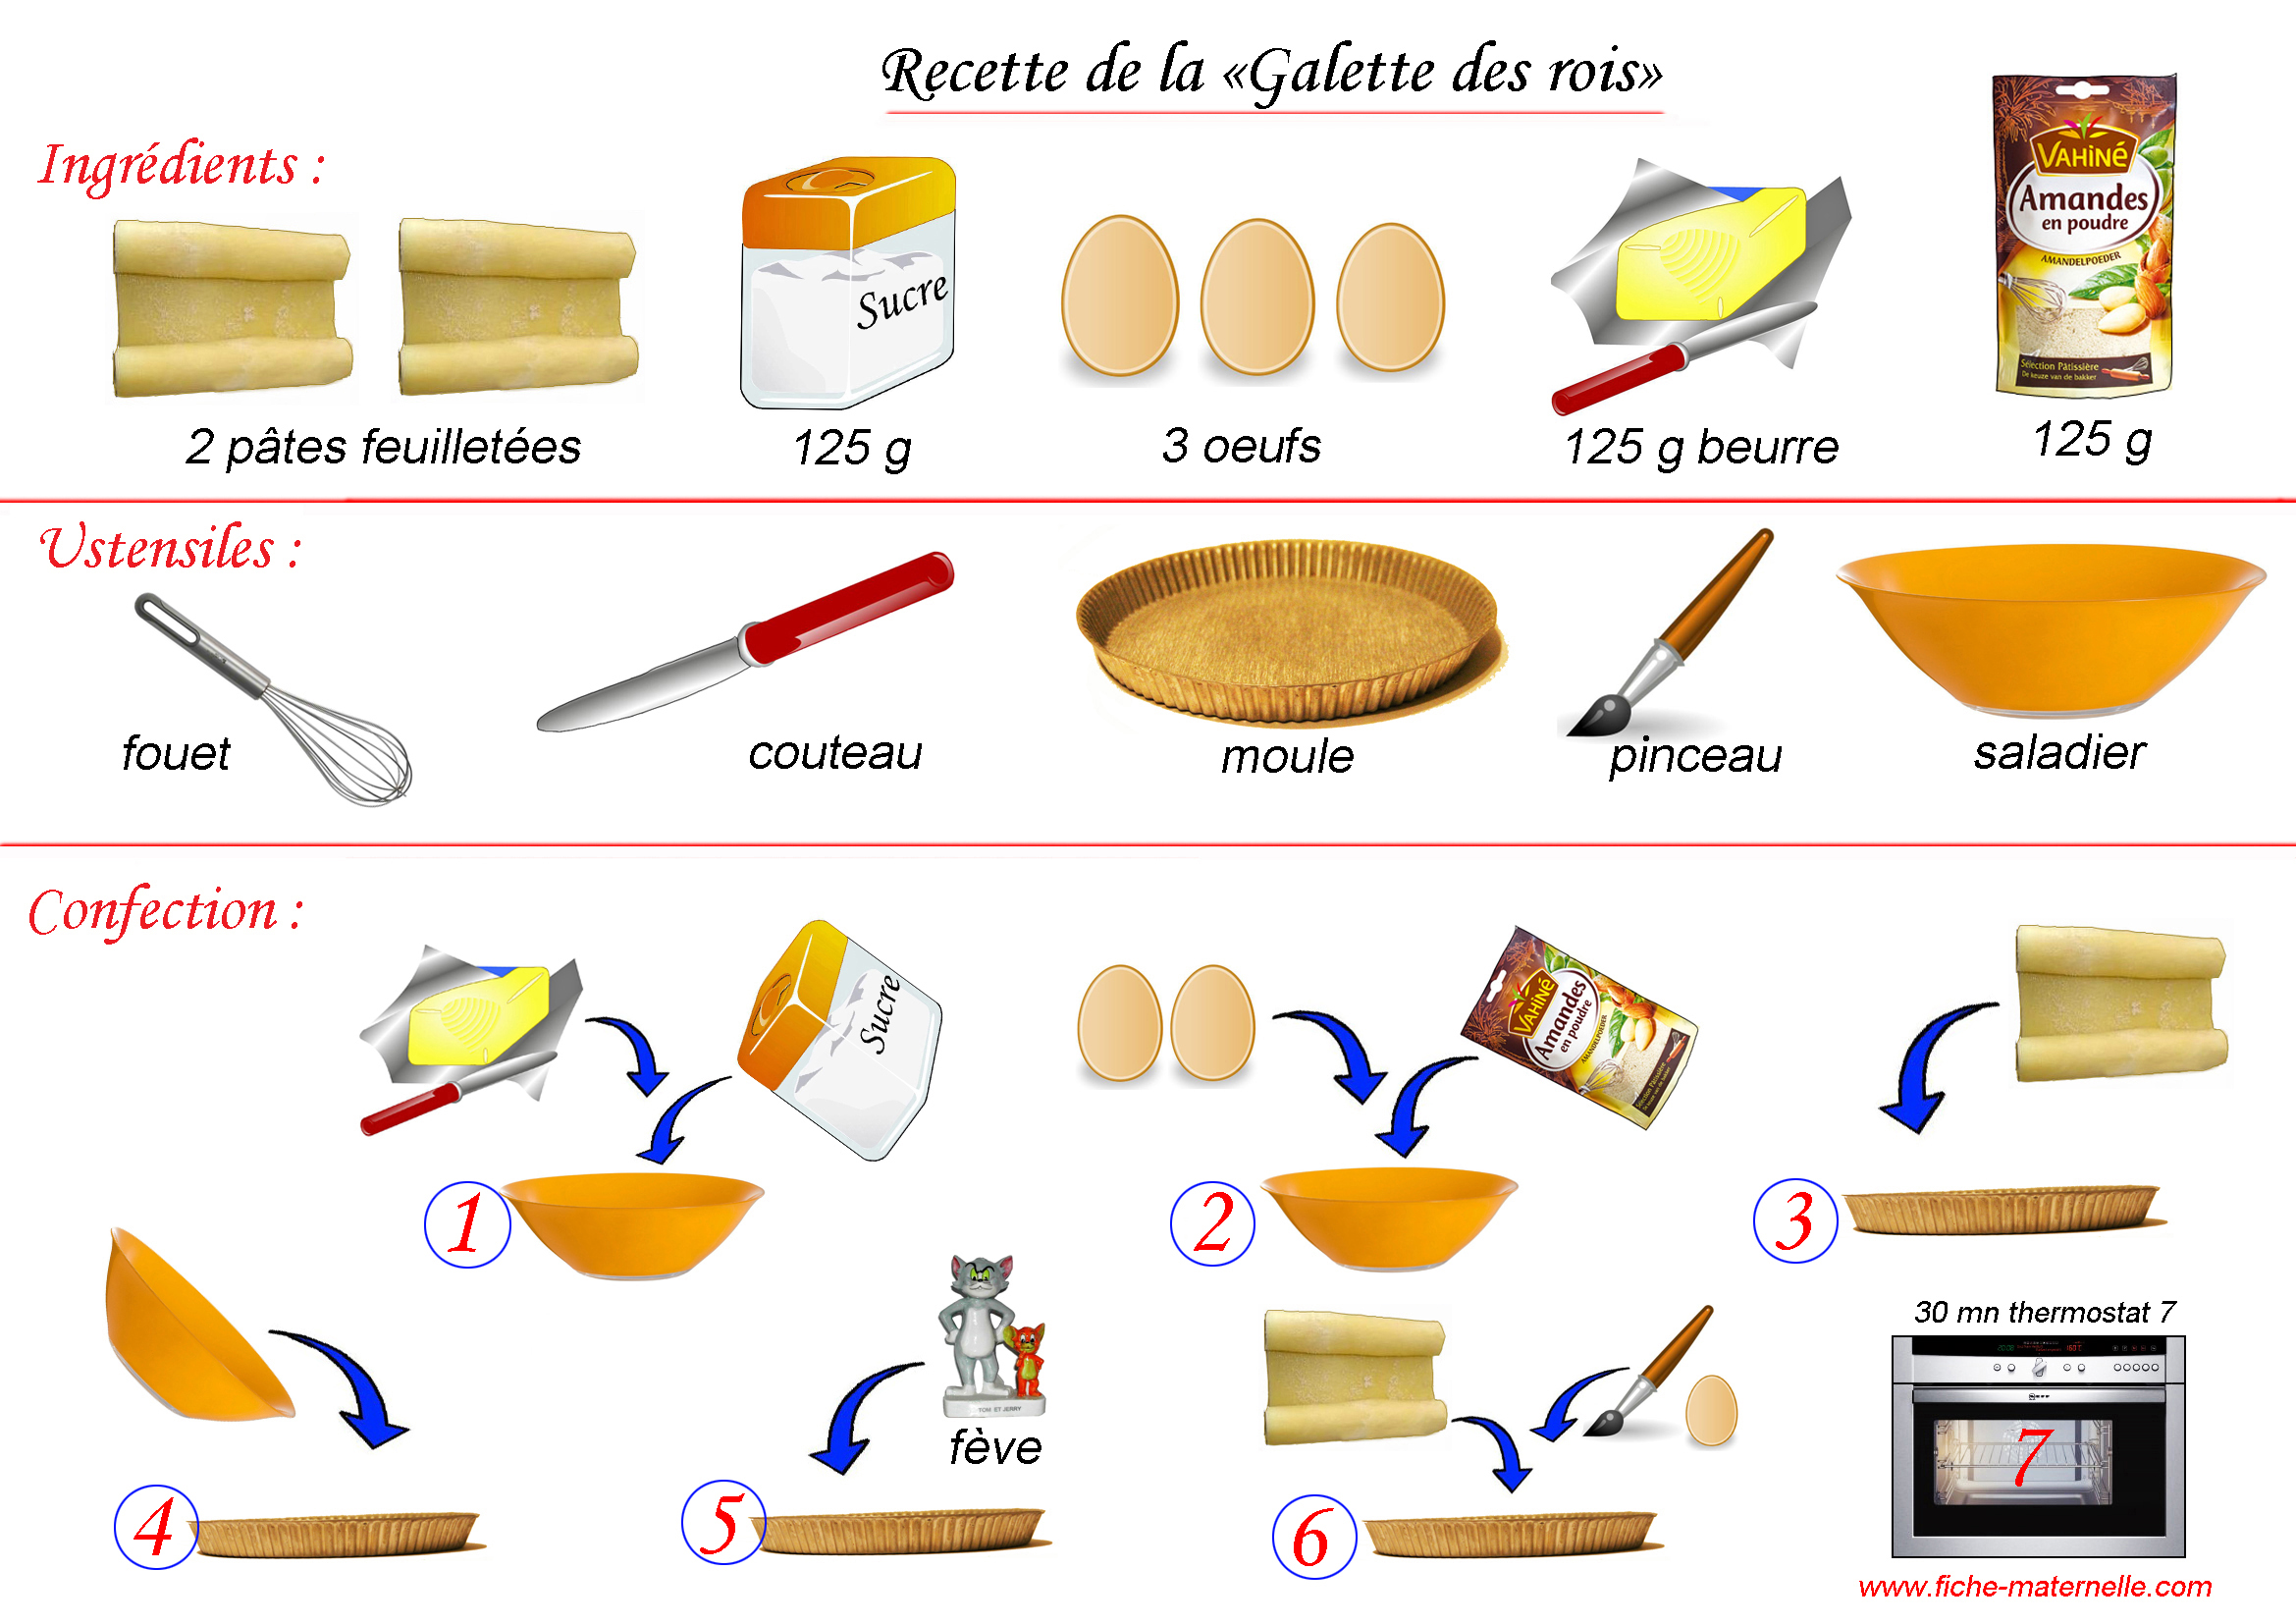 http://www.fiche-maternelle.com/recette-galette-des-rois.jpg